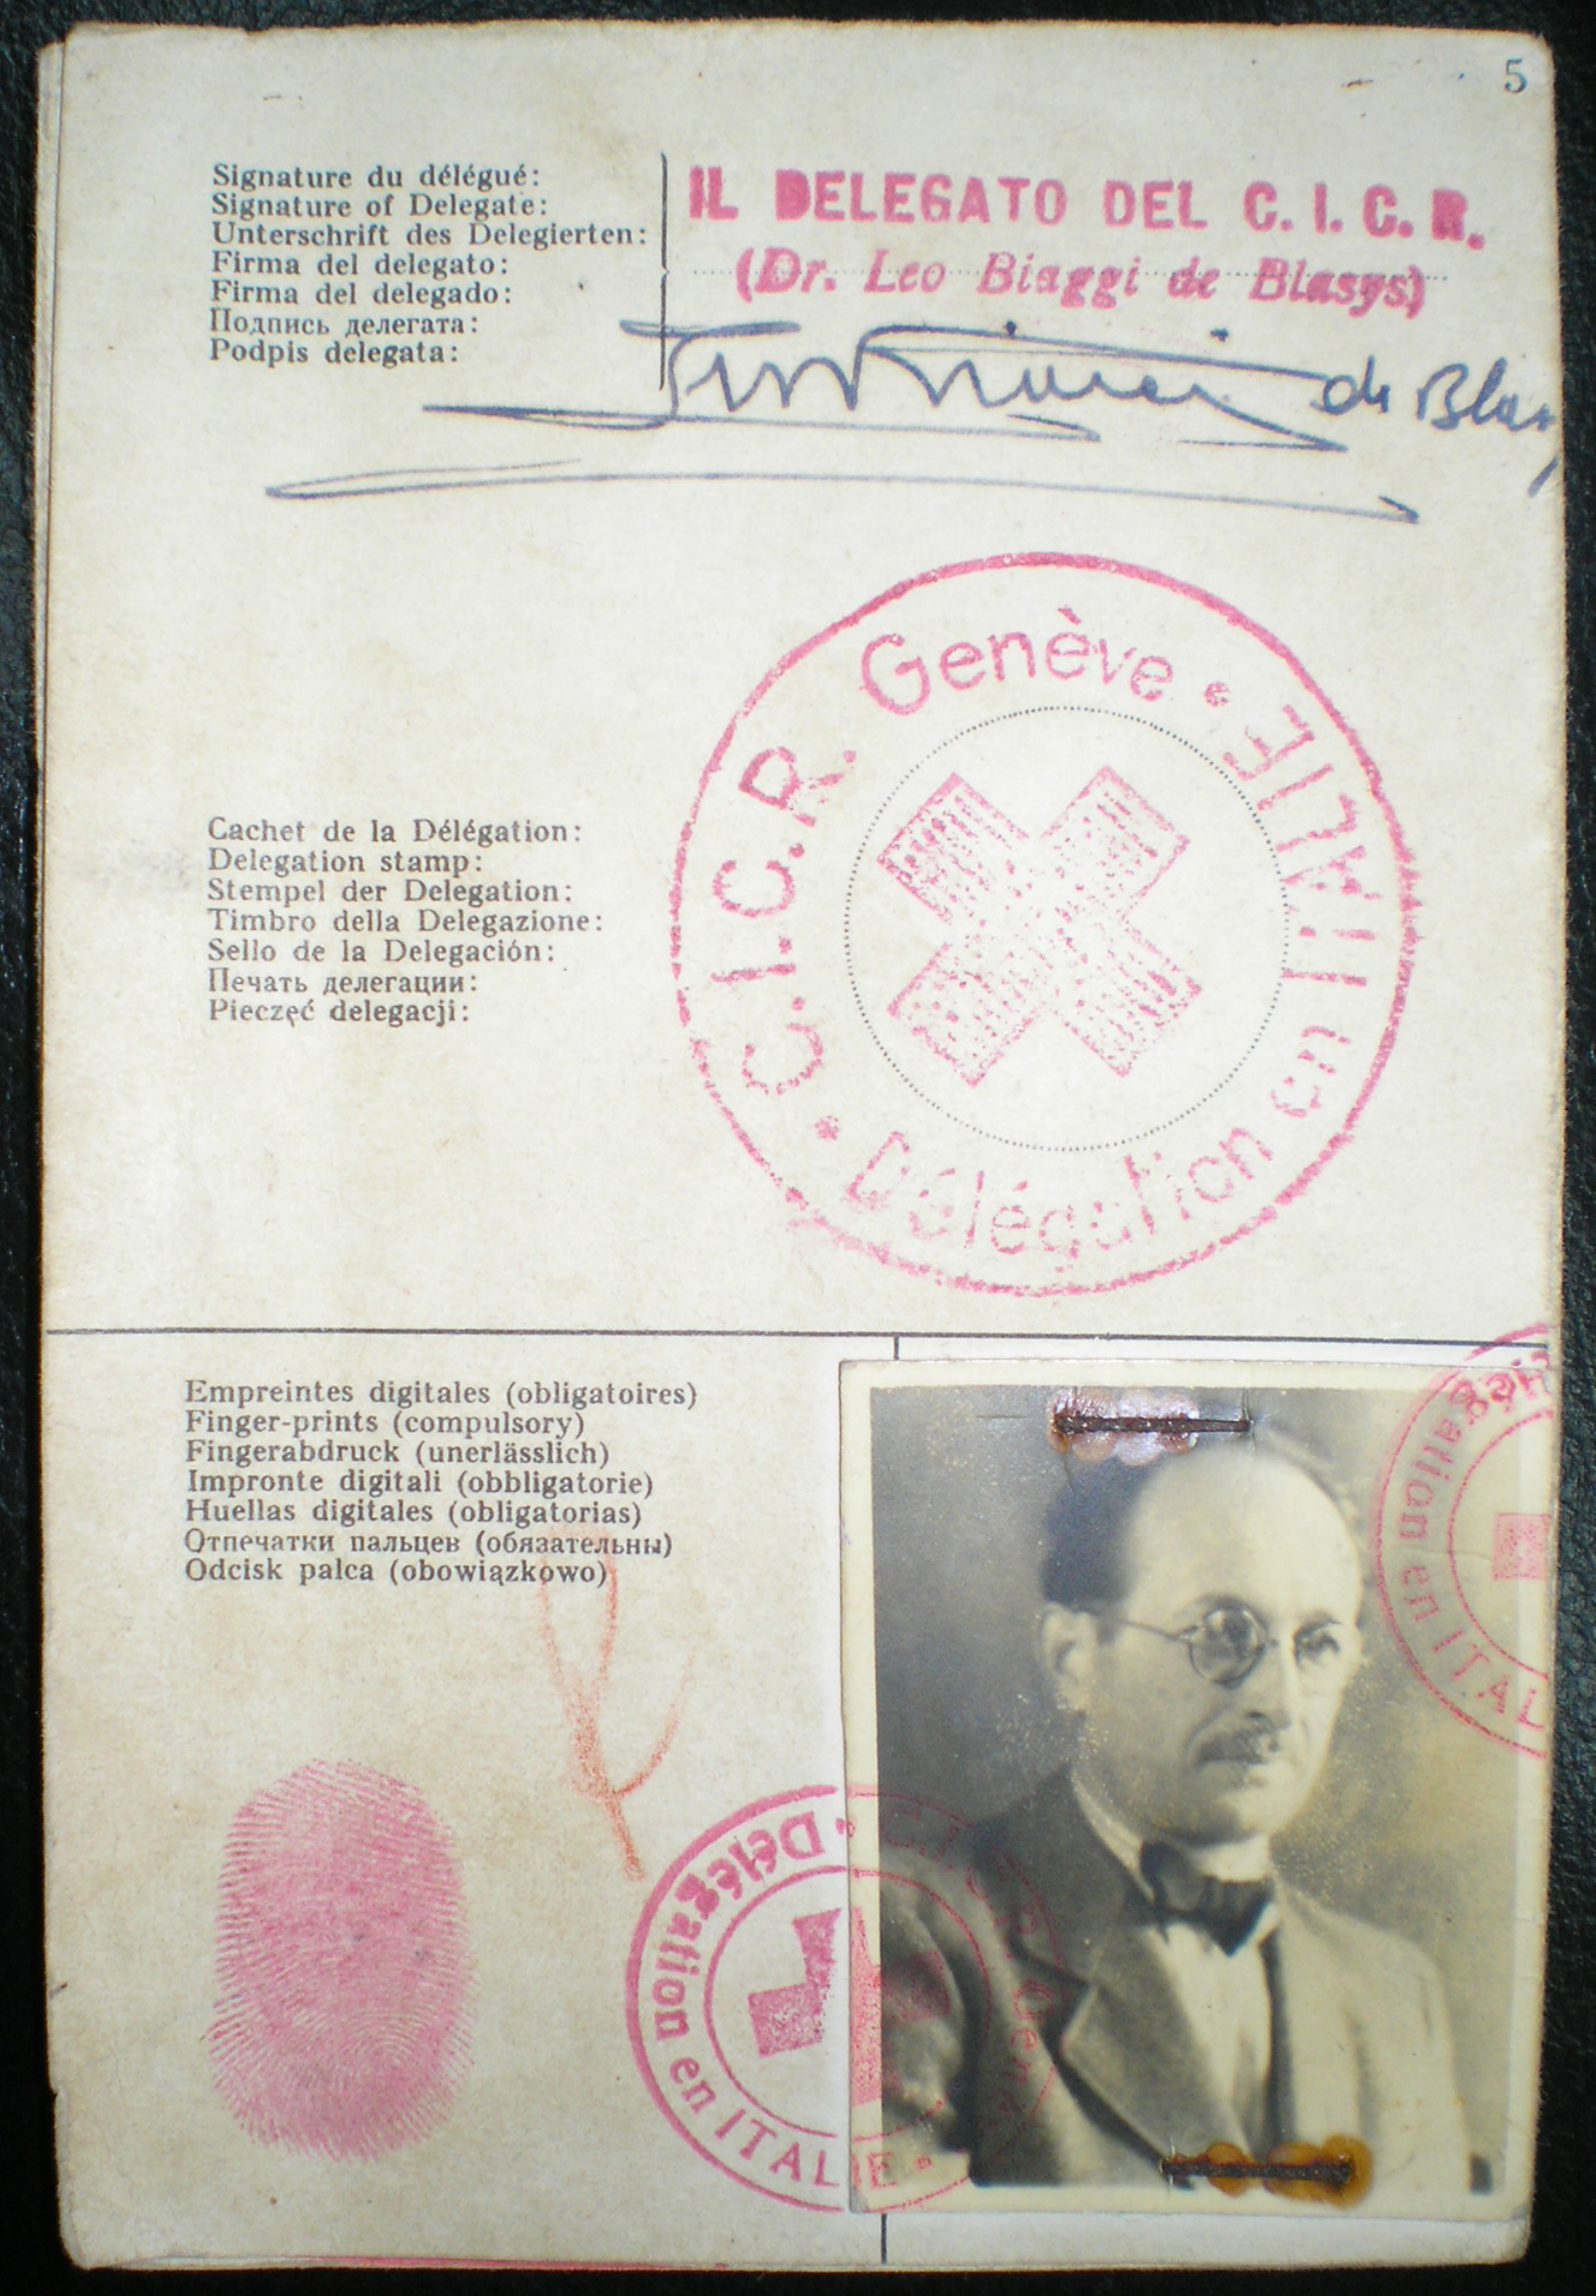 Il passaporto falso con il quale Adolf Eichmann arrivò in Argentina wikipedia no copyright https://it.wikipedia.org/wiki/Adolf_Eichmann#/media/File:WP_Eichmann_Passport.jpg